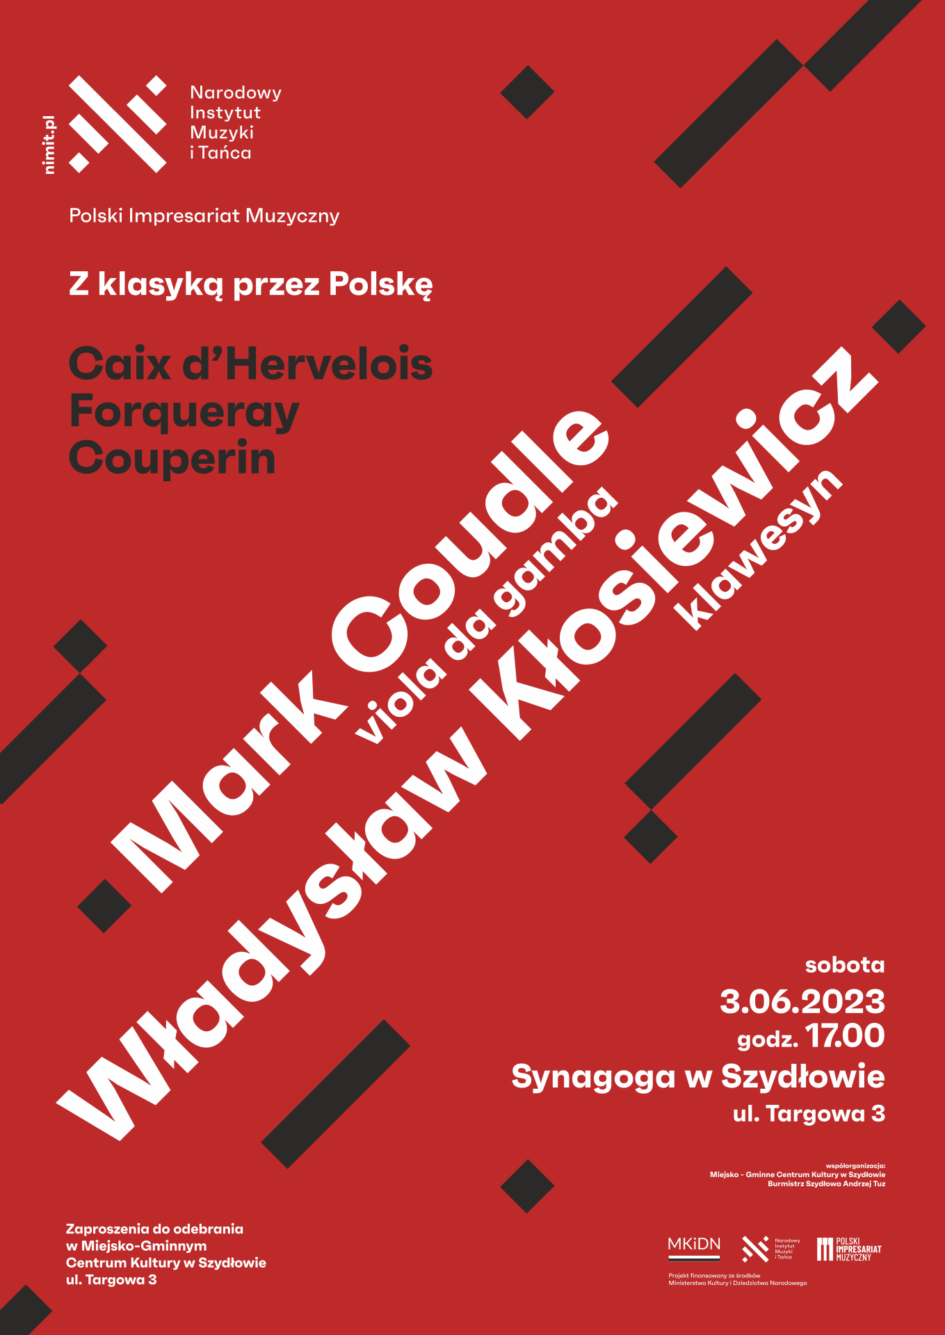 Mark Caudle i Władysław Kłosiewicz – dwaj wybitni muzycy wystąpią 3 czerwca w Synagodze w Szydłowie w ramach koncertu z cyklu „Z klasyką przez Polskę”. Ilość miejsc ograniczona. Obowiązują zaproszenia, które można odebrać w Miejsko-Gminnym Centrum Kultury w Szydłowie.